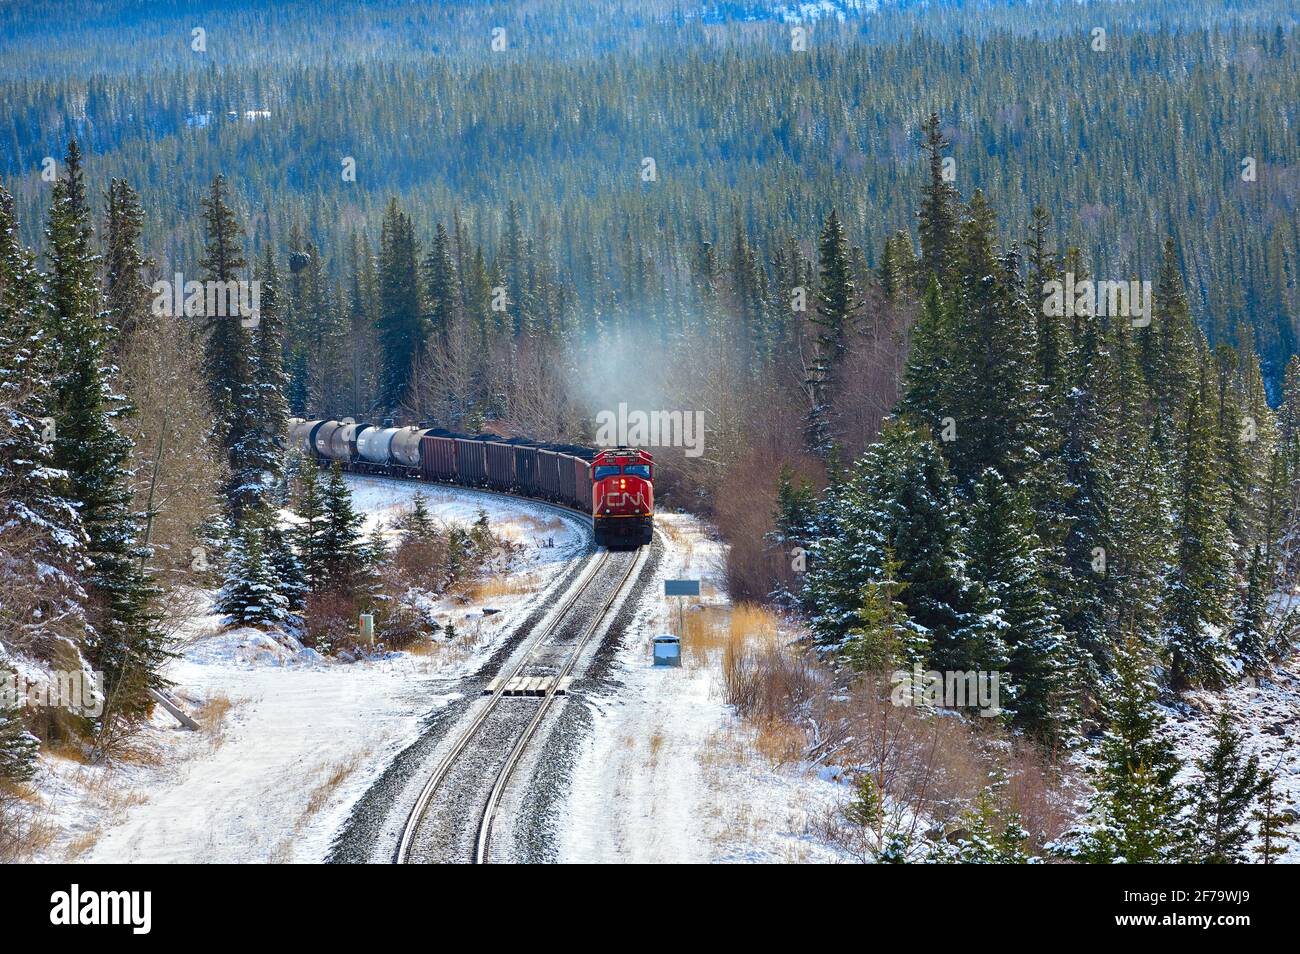 Un tren de carga nacional canadiense cargado con vagones de tren que viajan alrededor de una esquina en una zona boscosa de las montañas rocosas de Alberta Canadá. Foto de stock